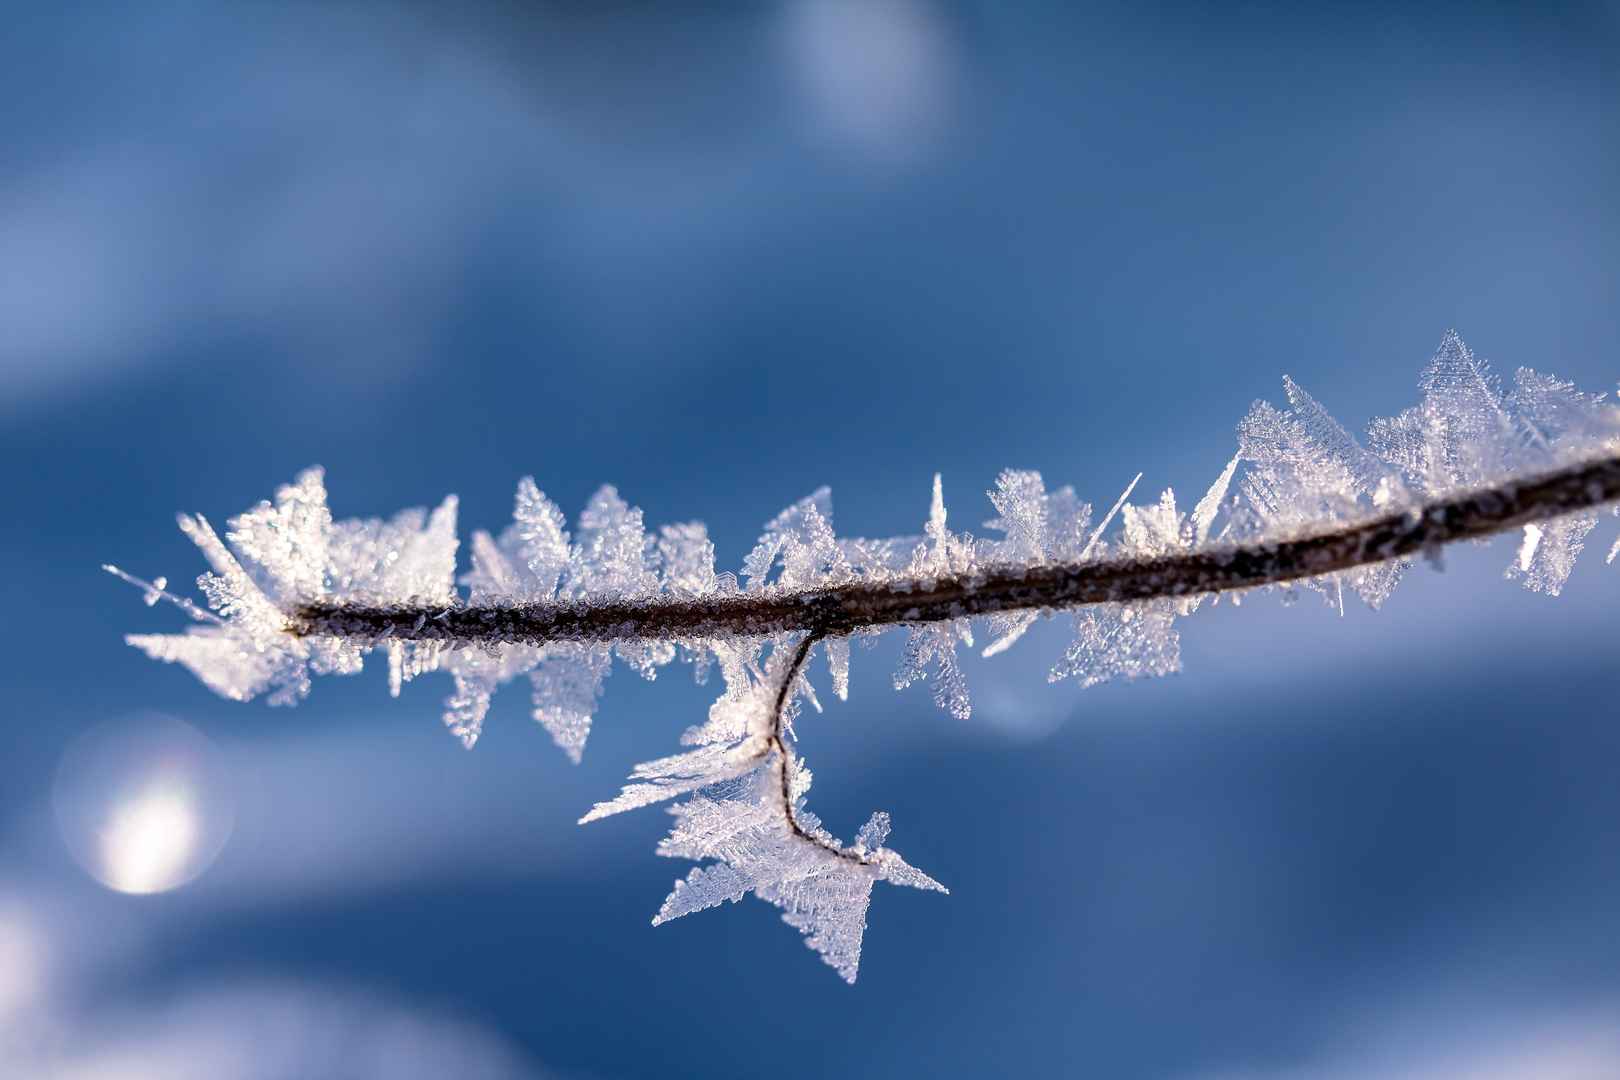 冬季透明寒冷的冰晶图片-